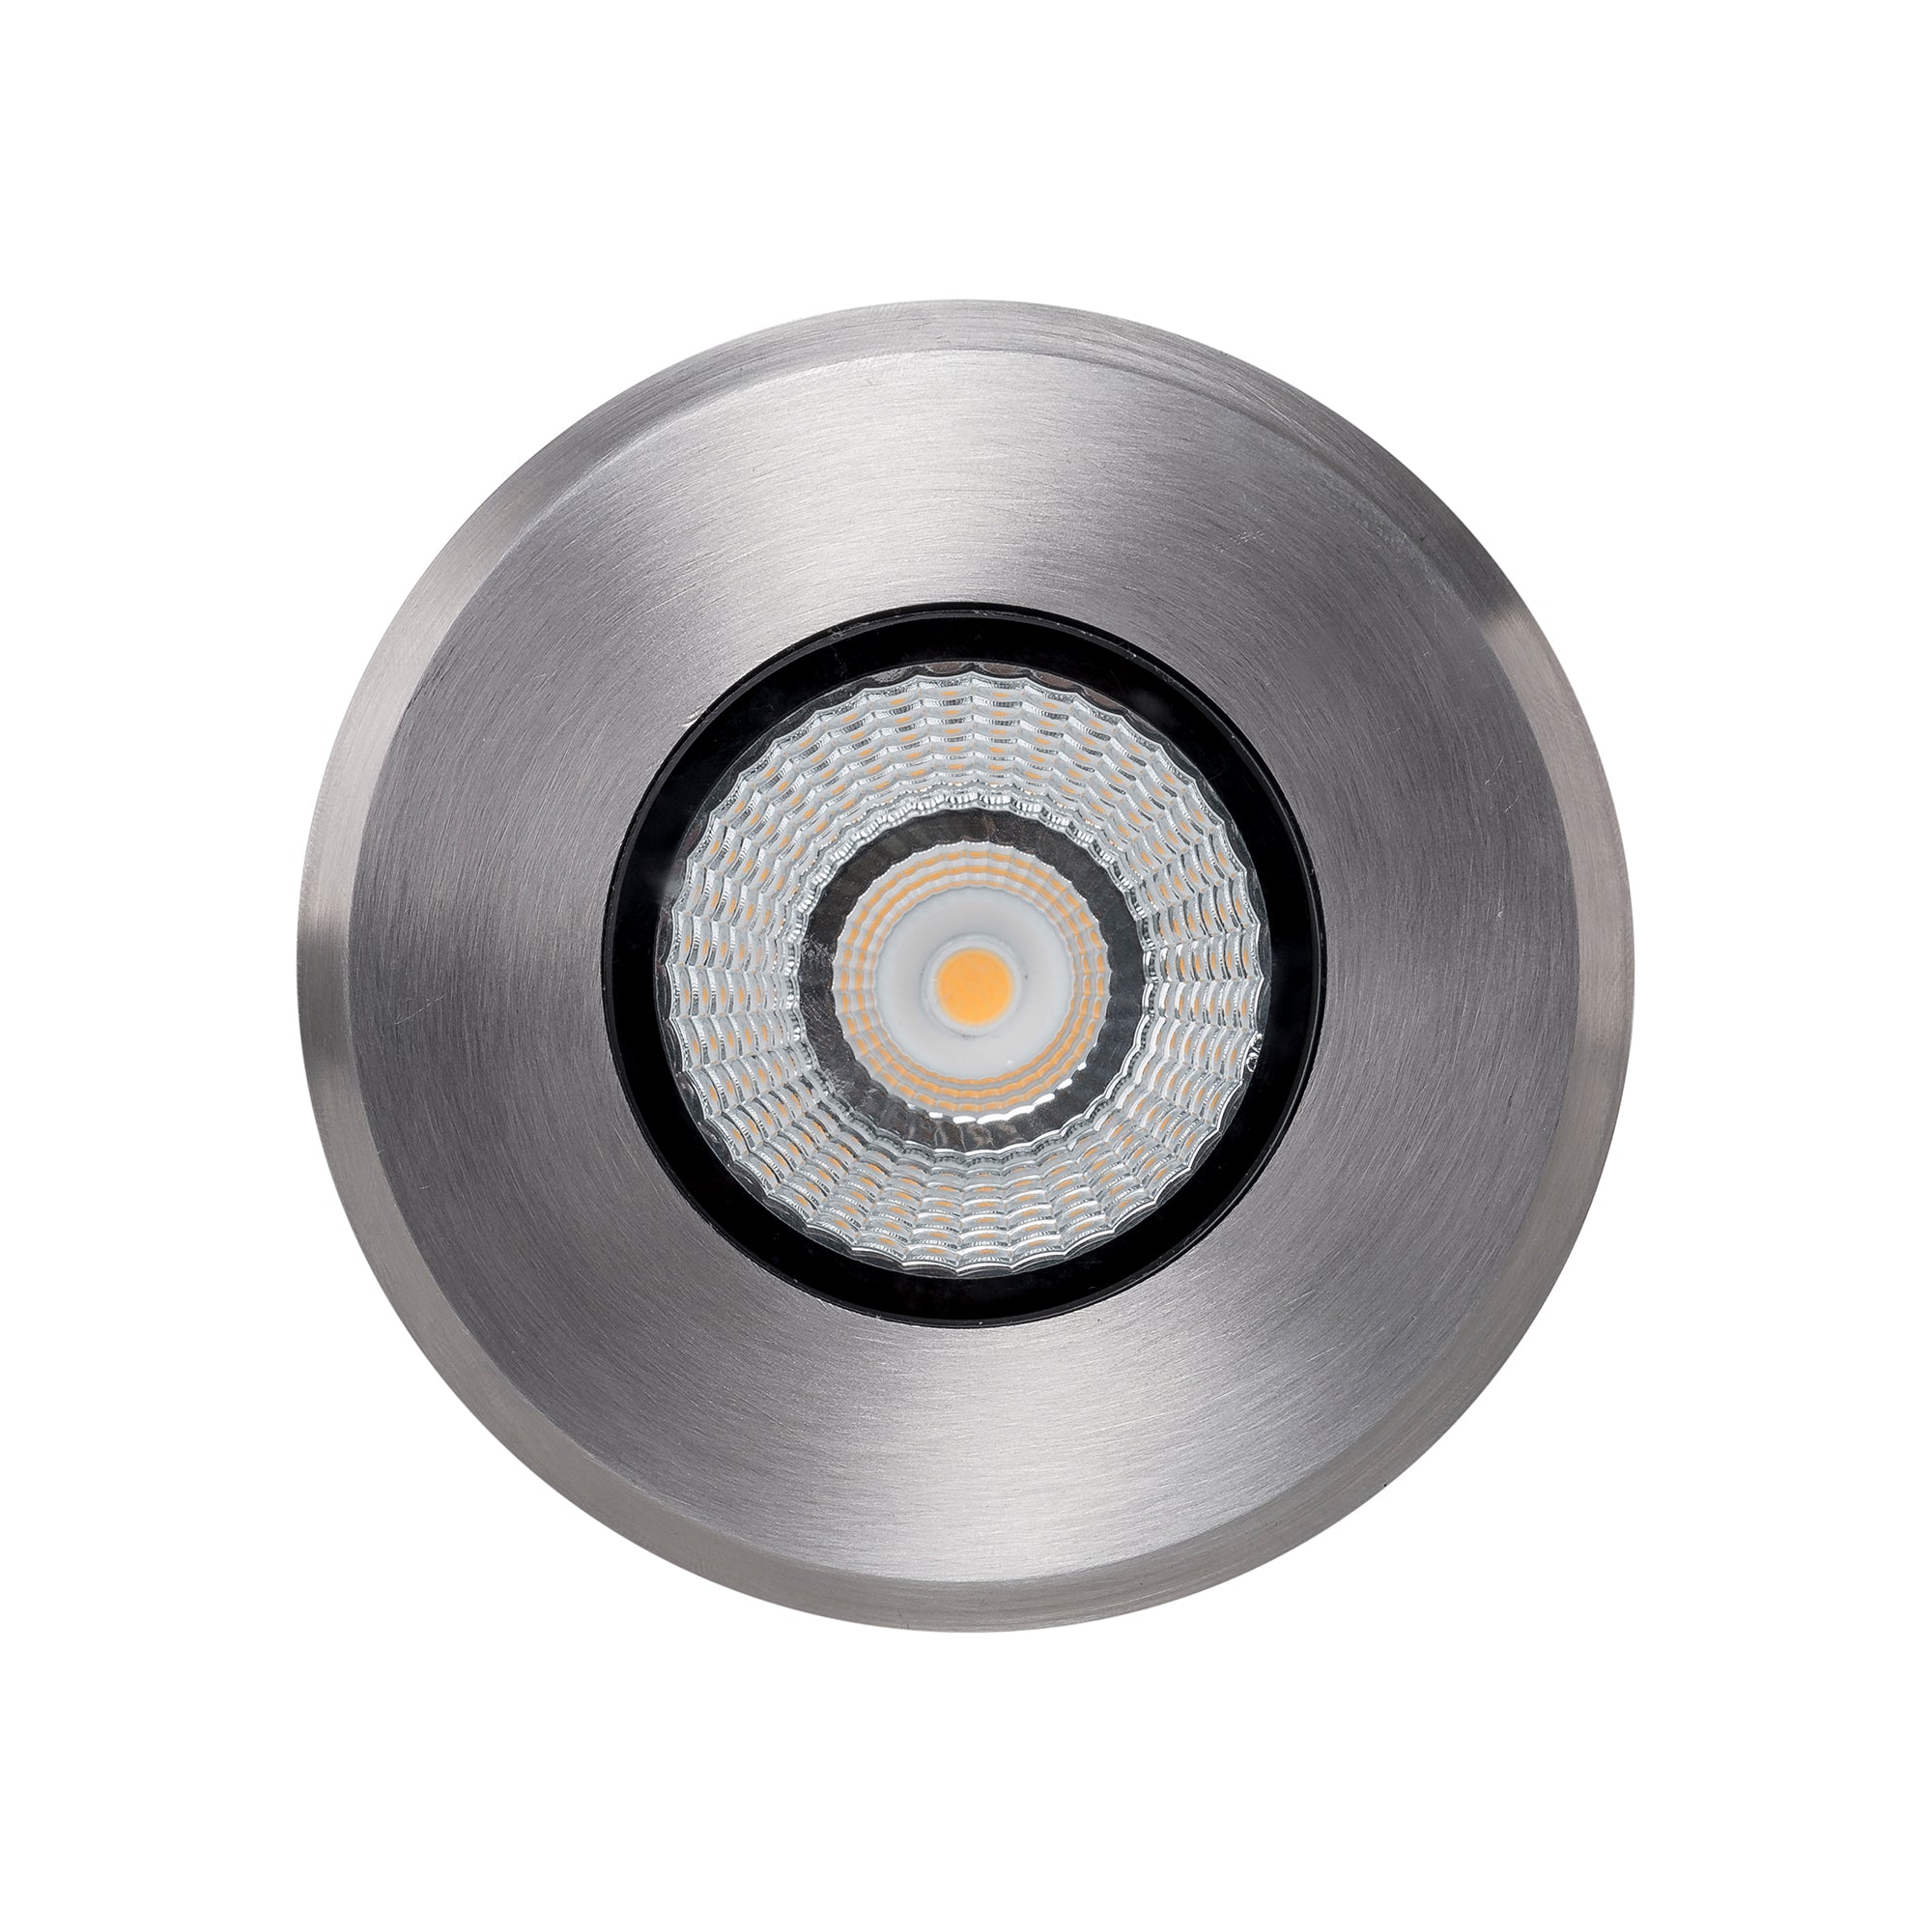 HV1831 - Klip 316 Stainless Steel 7w LED Inground Light